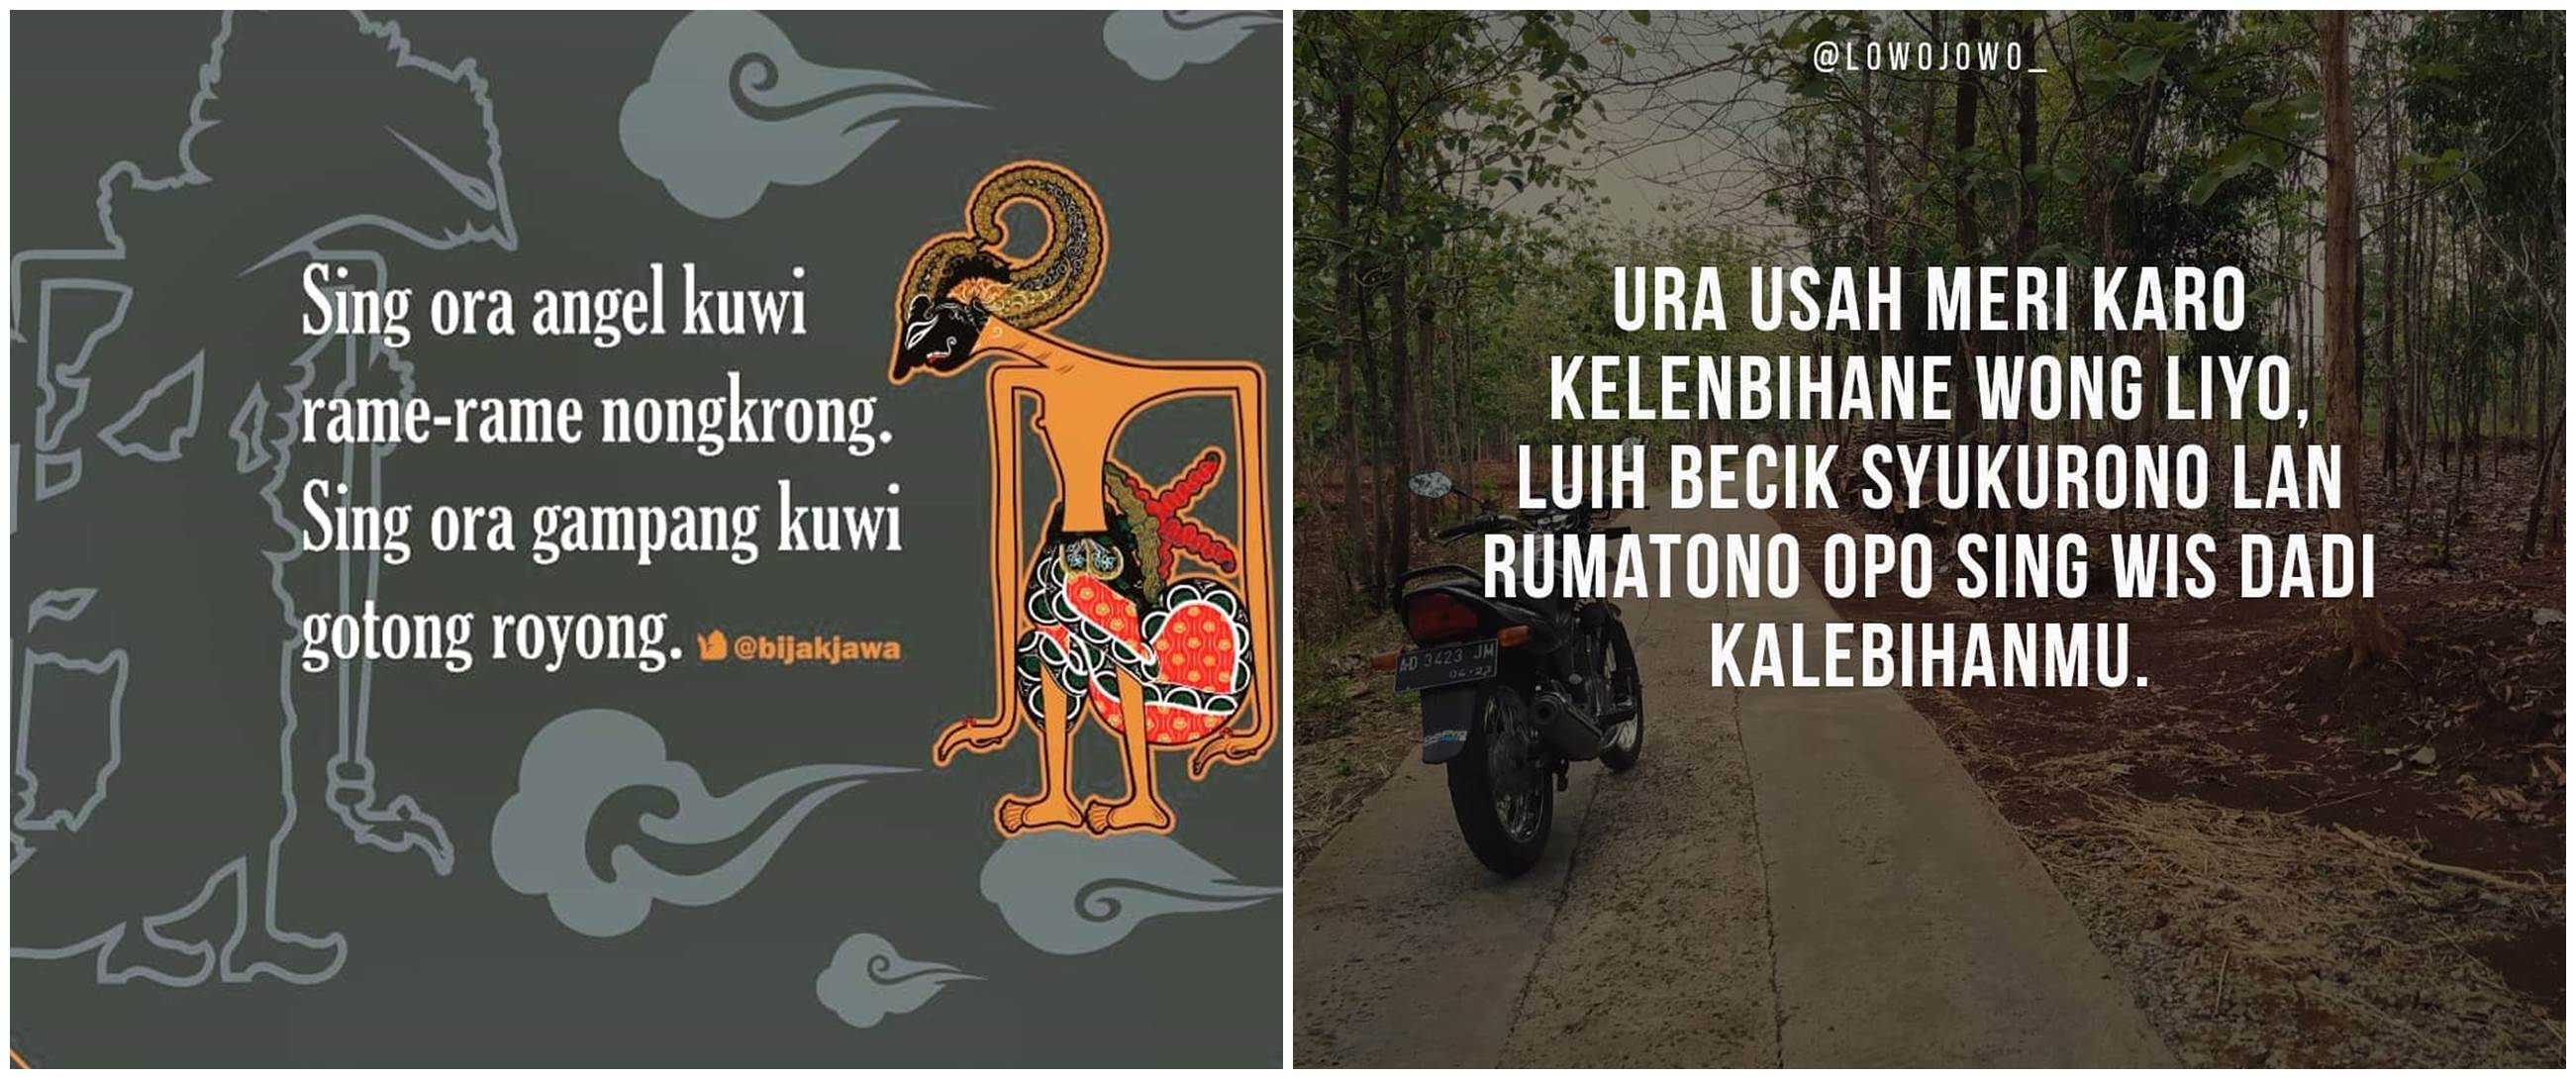 59 Kata kata  motivasi  kehidupan  bahasa Jawa  menyentuh hati